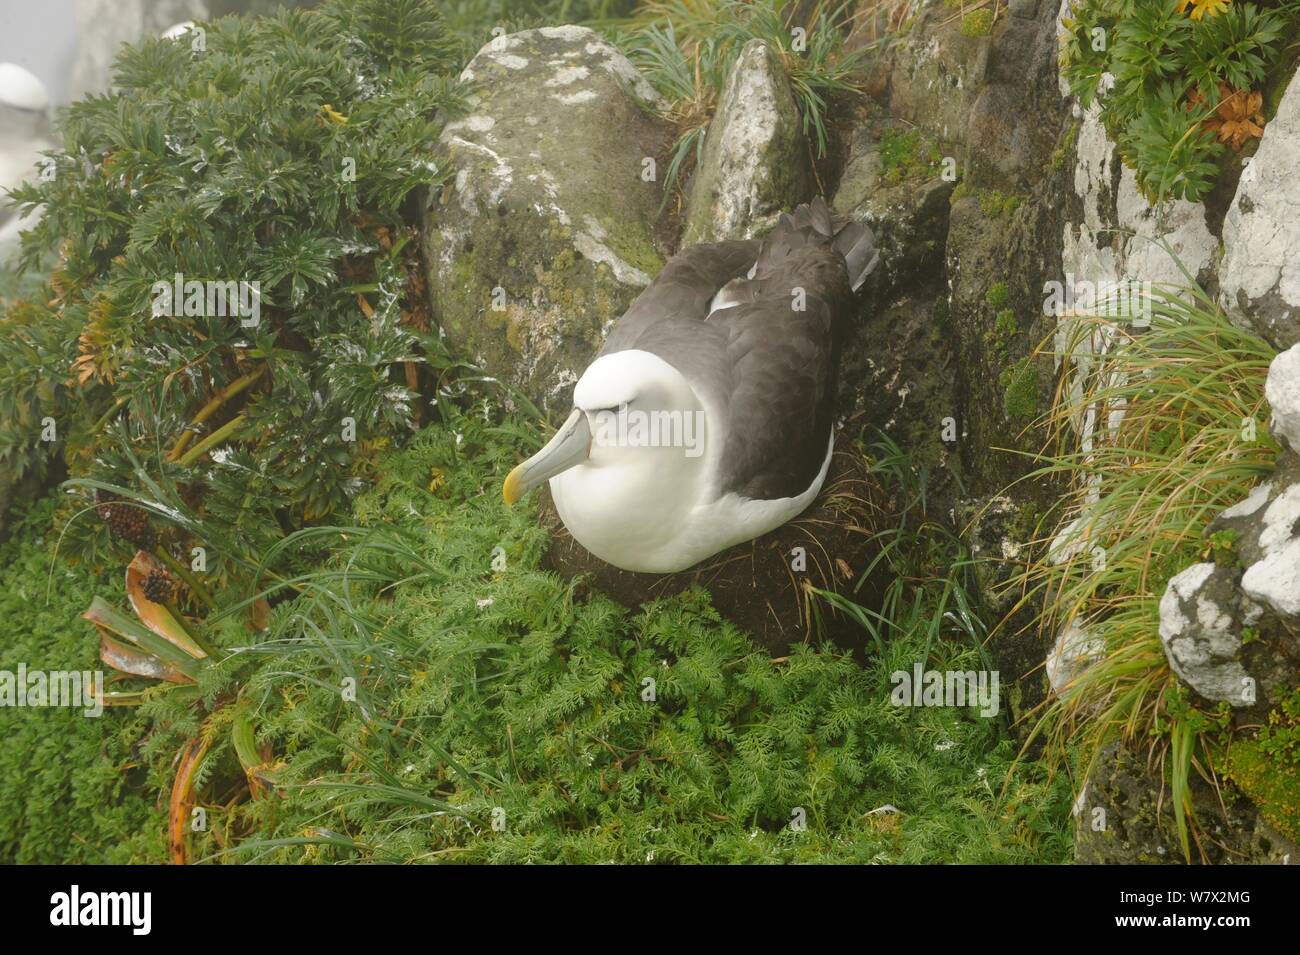 Albatros à cape blanche (Thalassarche steadi) sur son nid, îles Auckland, Nouvelle-Zélande, février. Banque D'Images